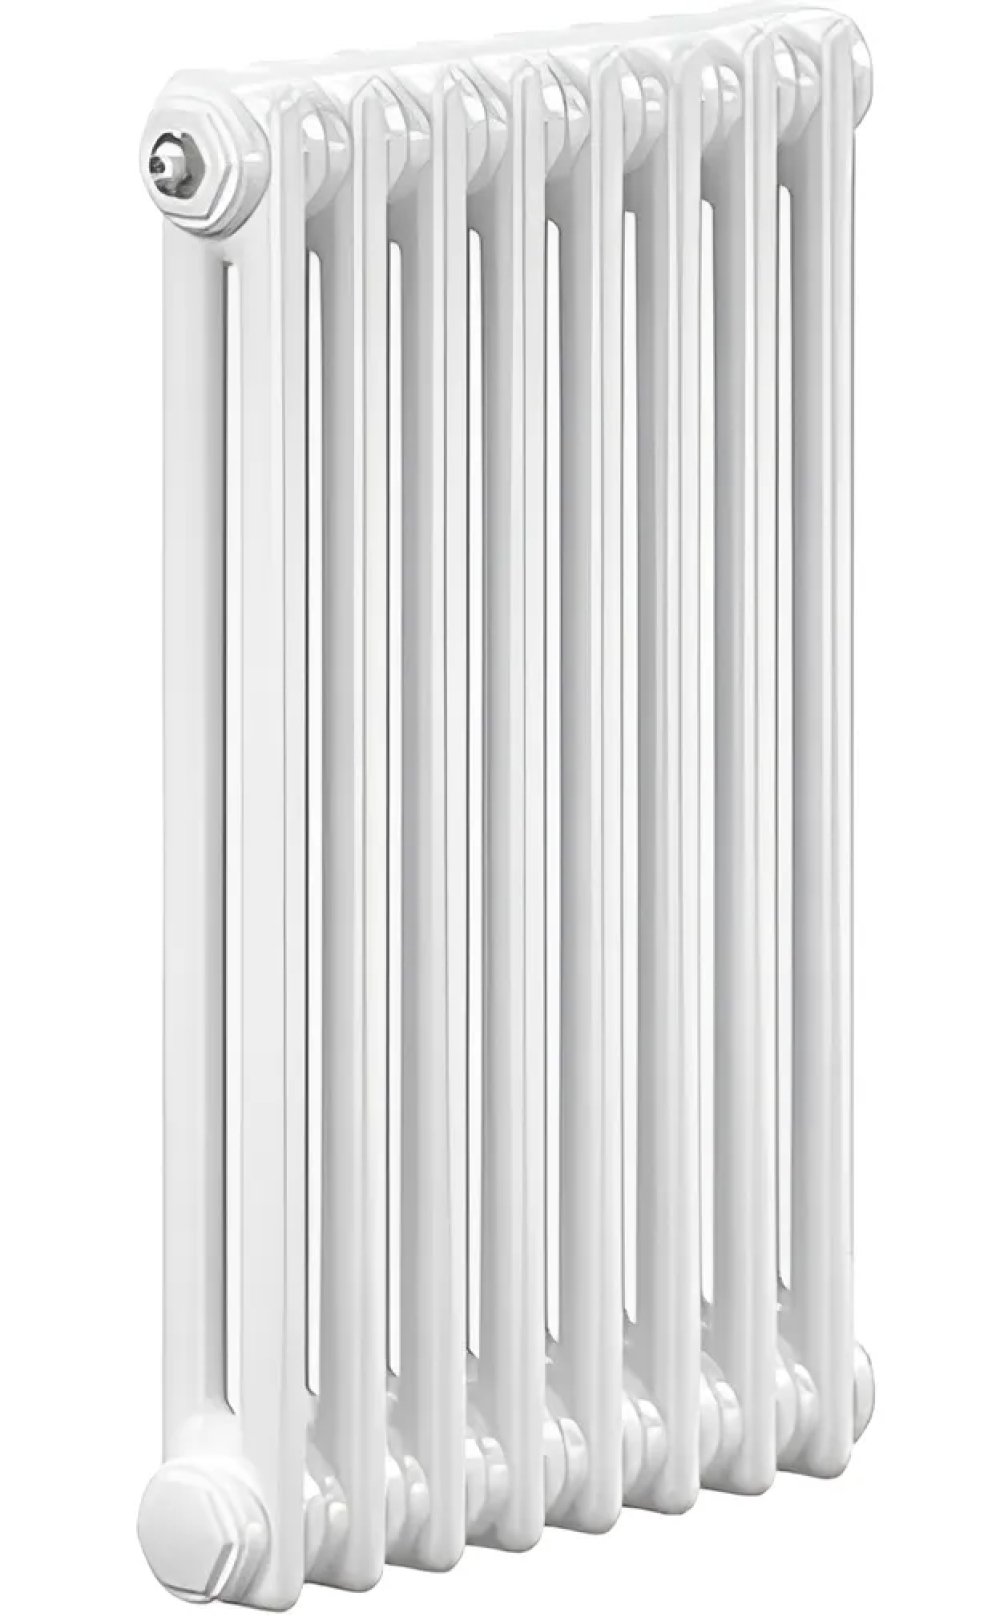 Радиаторы стальные трубчатые IRSAP Tesi 2 высота 900 мм, 6-28 секций, присоединение резьбовое - 1/2″, нижнее подключение - термостат сверху T25, теплоотдача 475-2218 Вт, цвет - белый